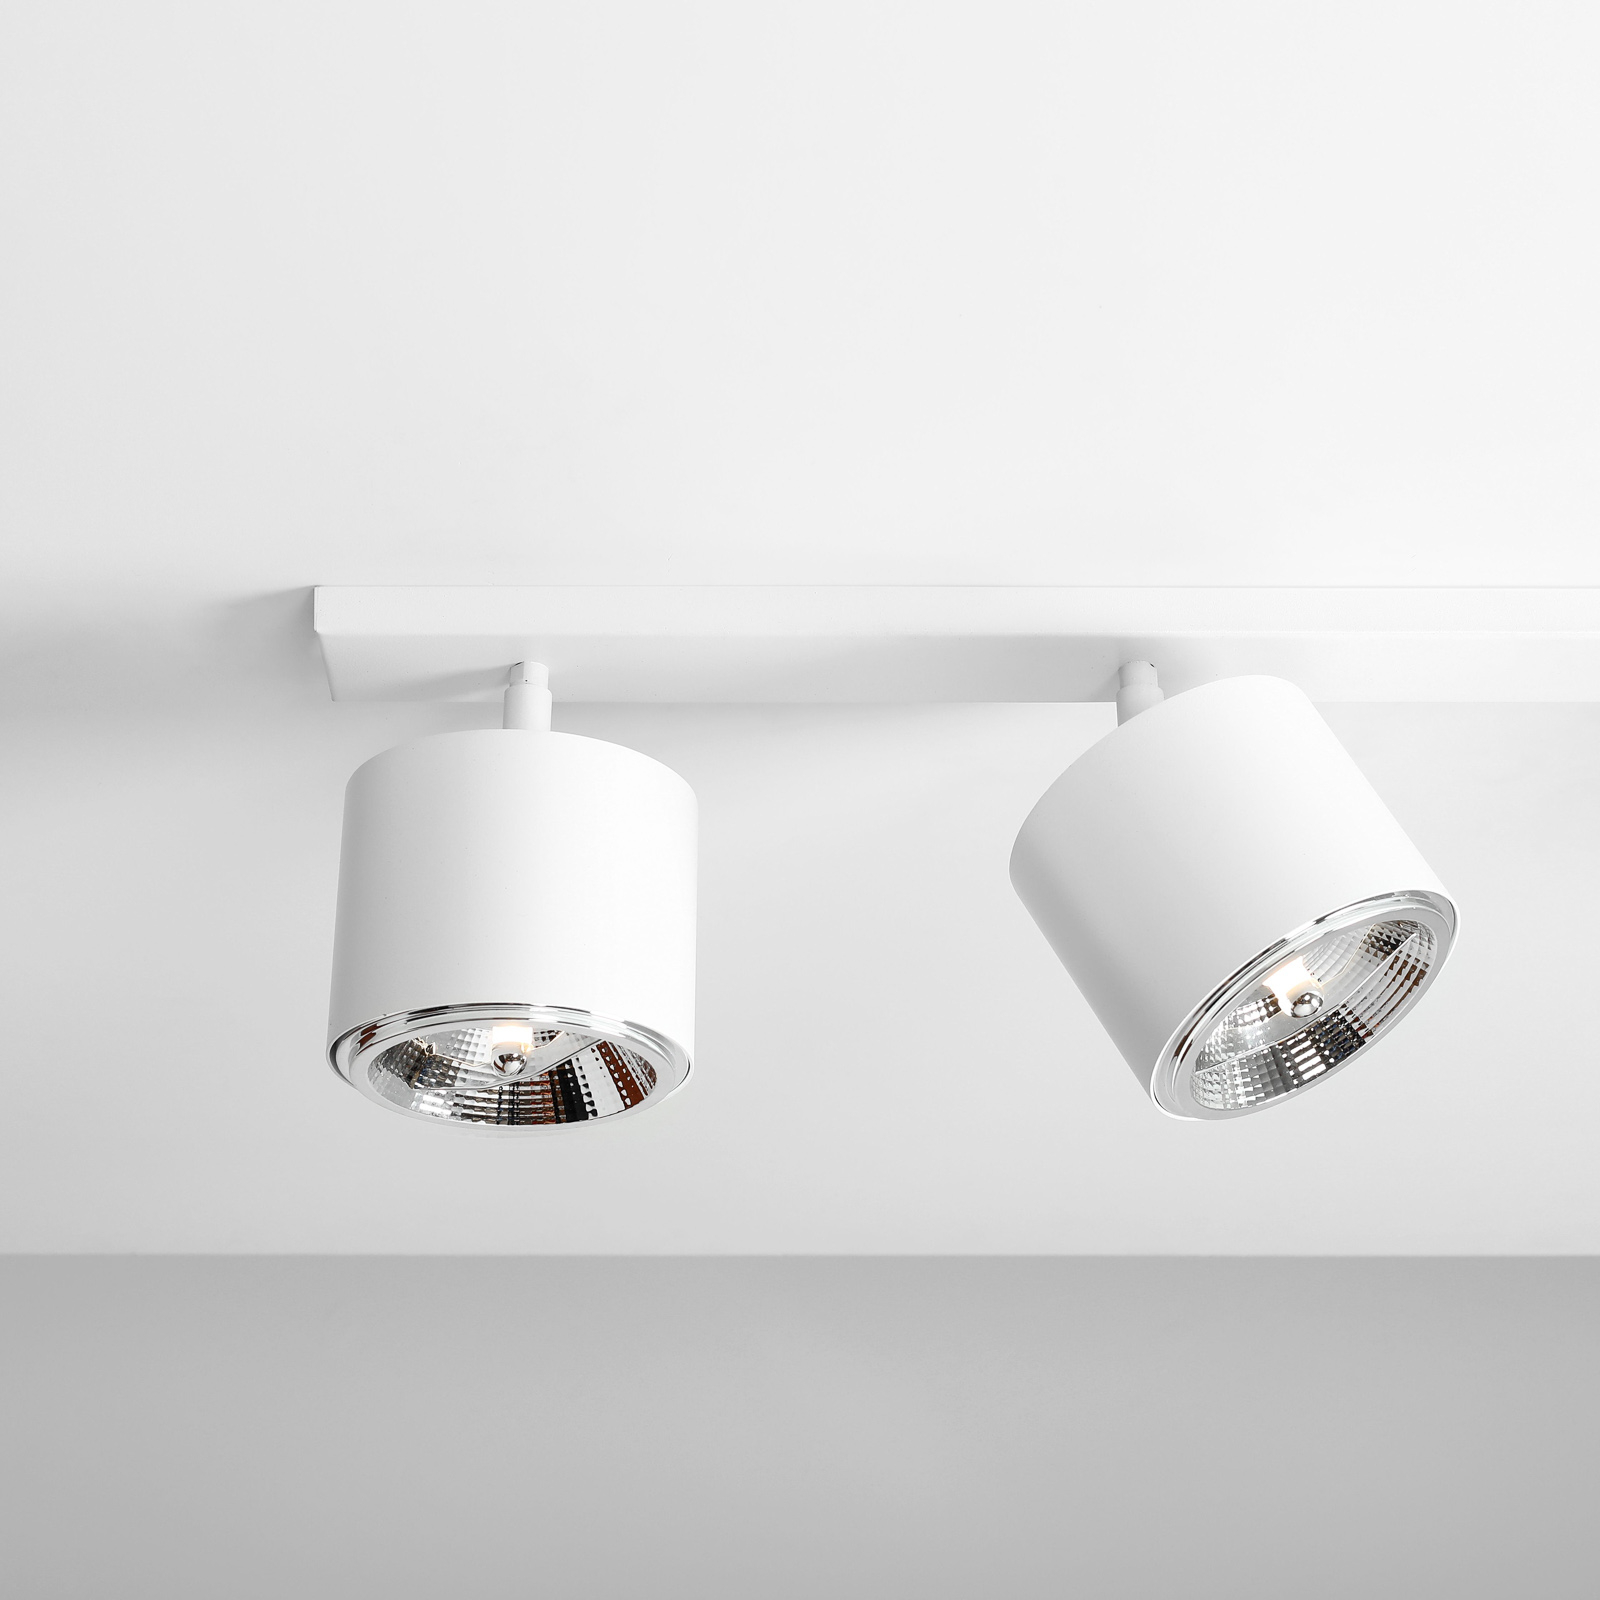 Bot ceiling spotlight, white, four-bulb